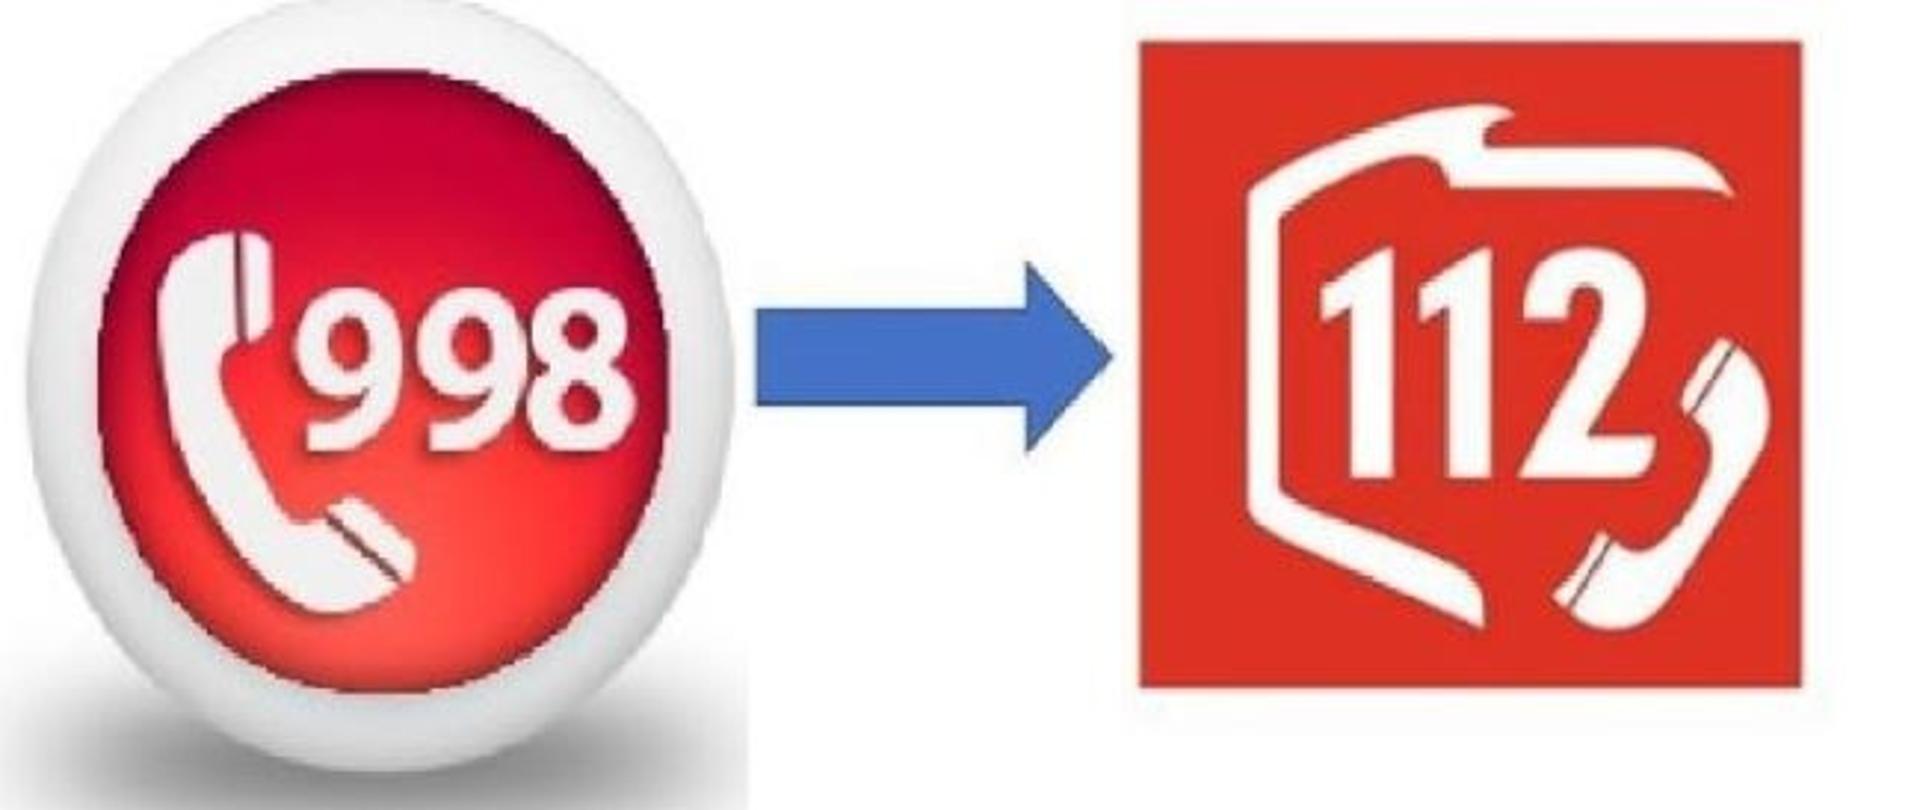 Okrągłe czerwone logo ze słuchawką i numerem 998 przechodzi w logo centrum powiadamiania ratunkowego, w czerwonym kwadracie numer 112 i słuchawka.